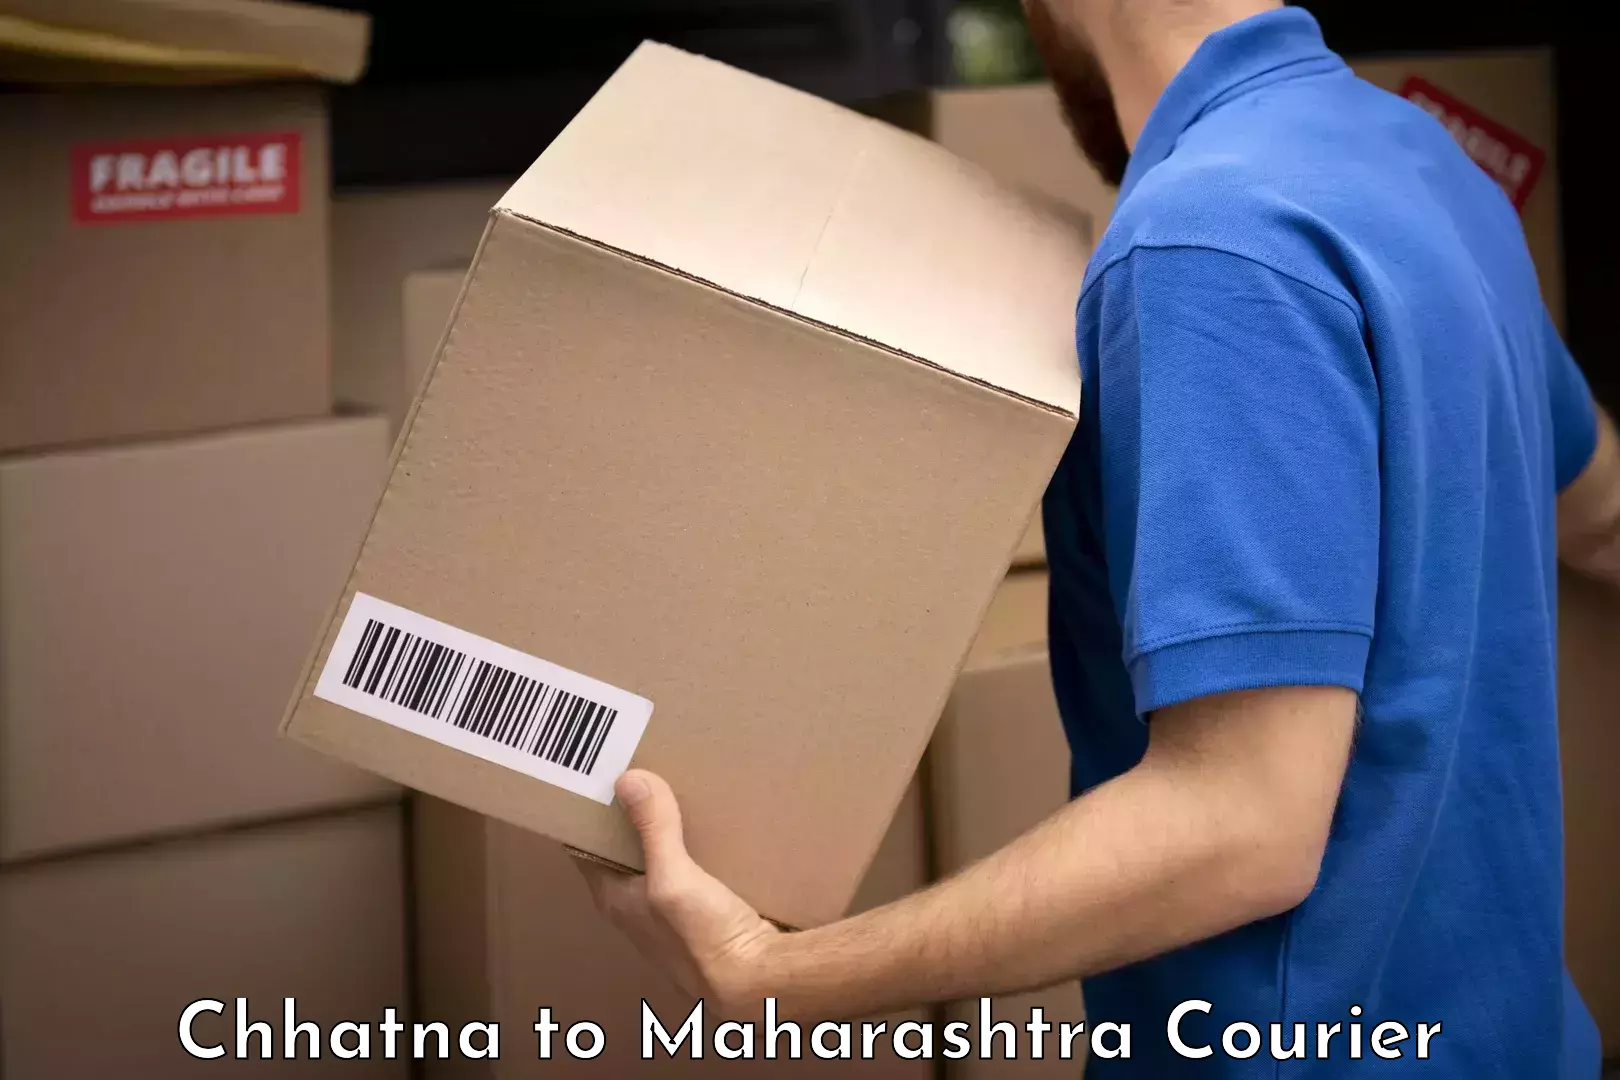 Luggage transport consultancy Chhatna to Maharashtra